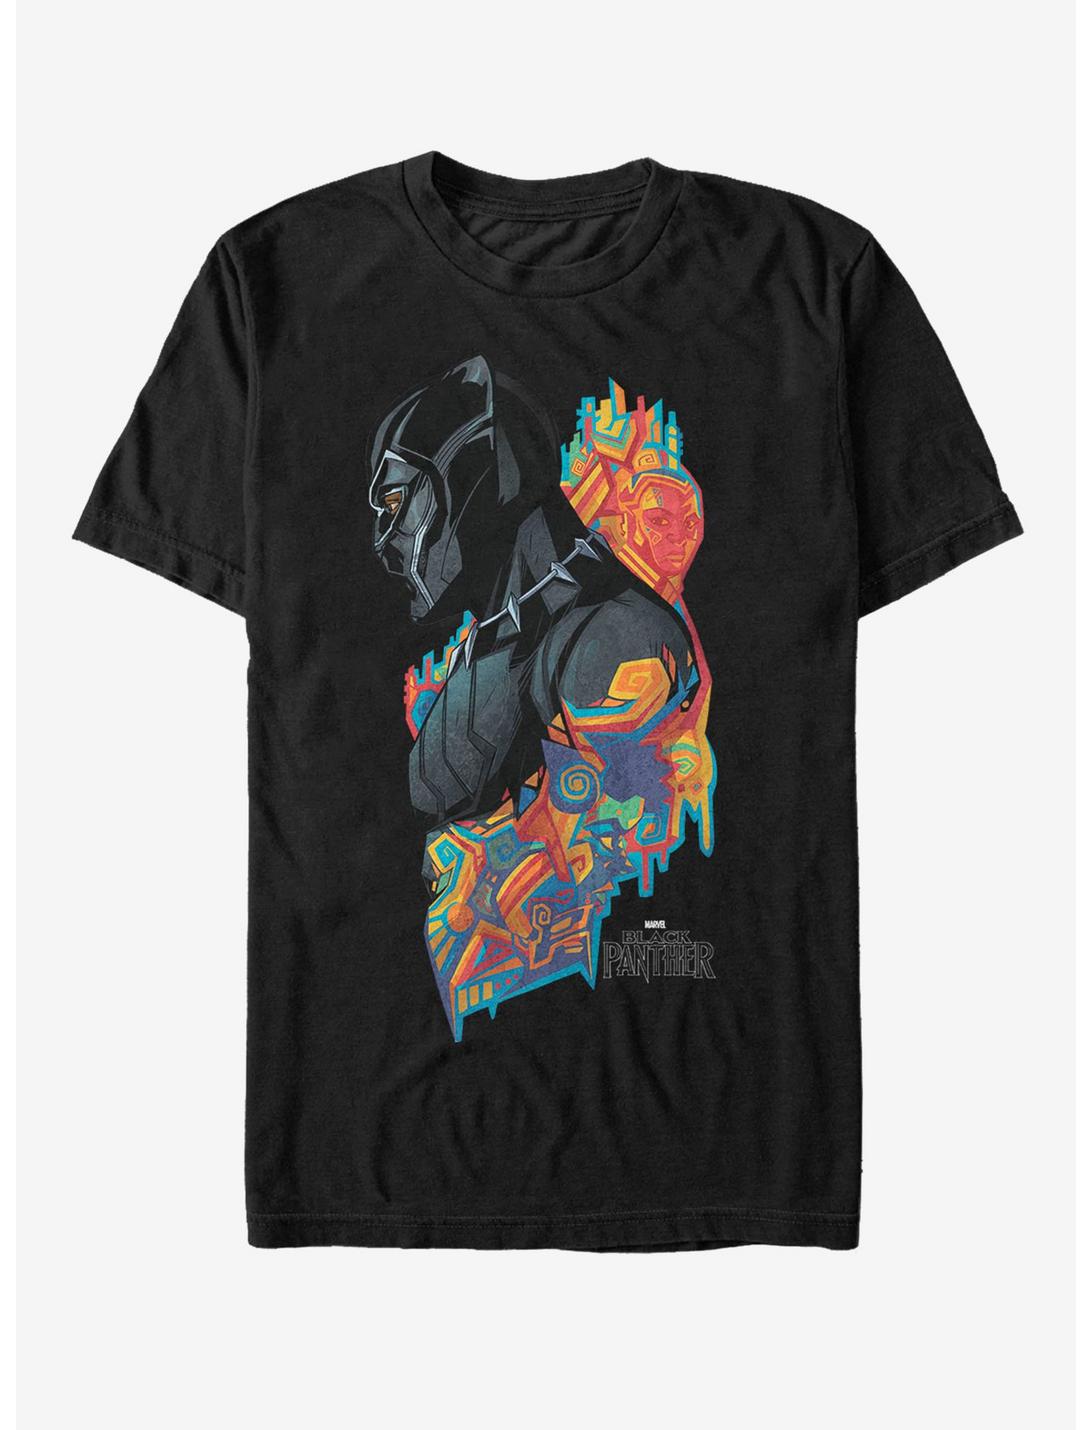 Marvel Black Panther 2018 Artistic Pattern T-Shirt, BLACK, hi-res